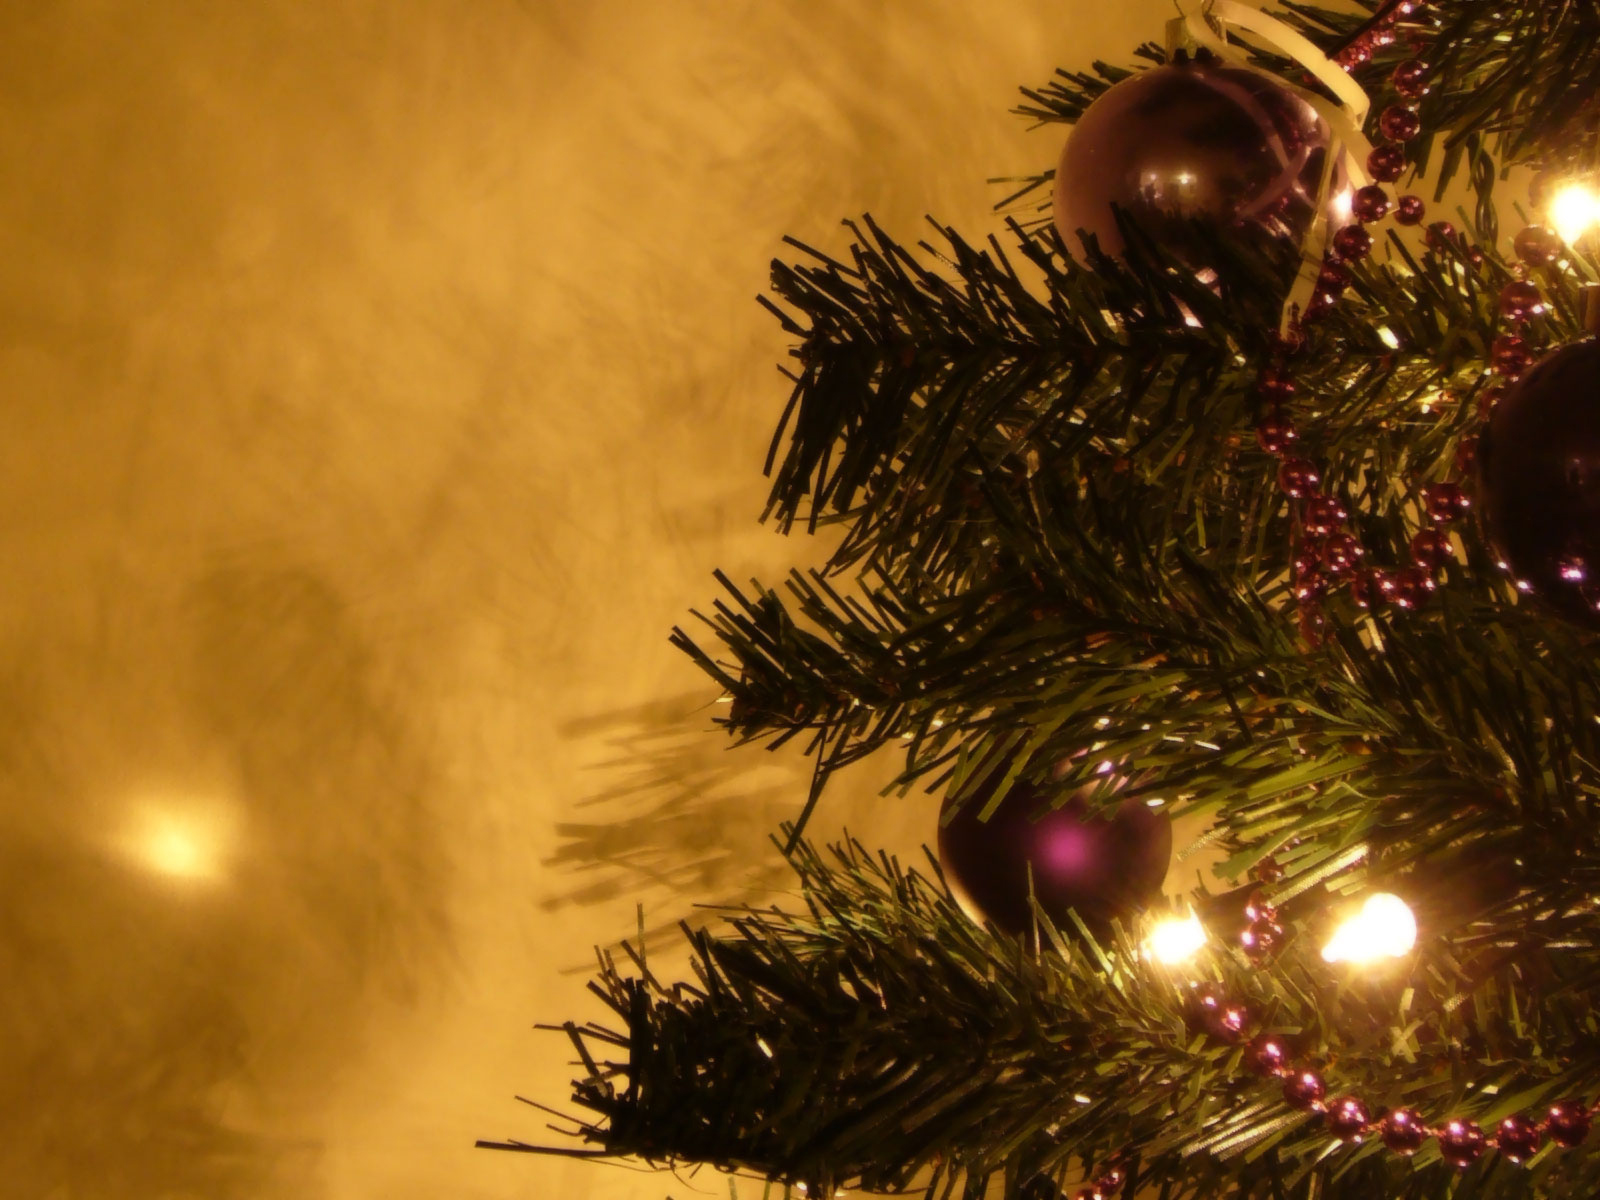 fondos de pantalla hd navidad,decoración navideña,árbol de navidad,árbol,decoración navideña,navidad